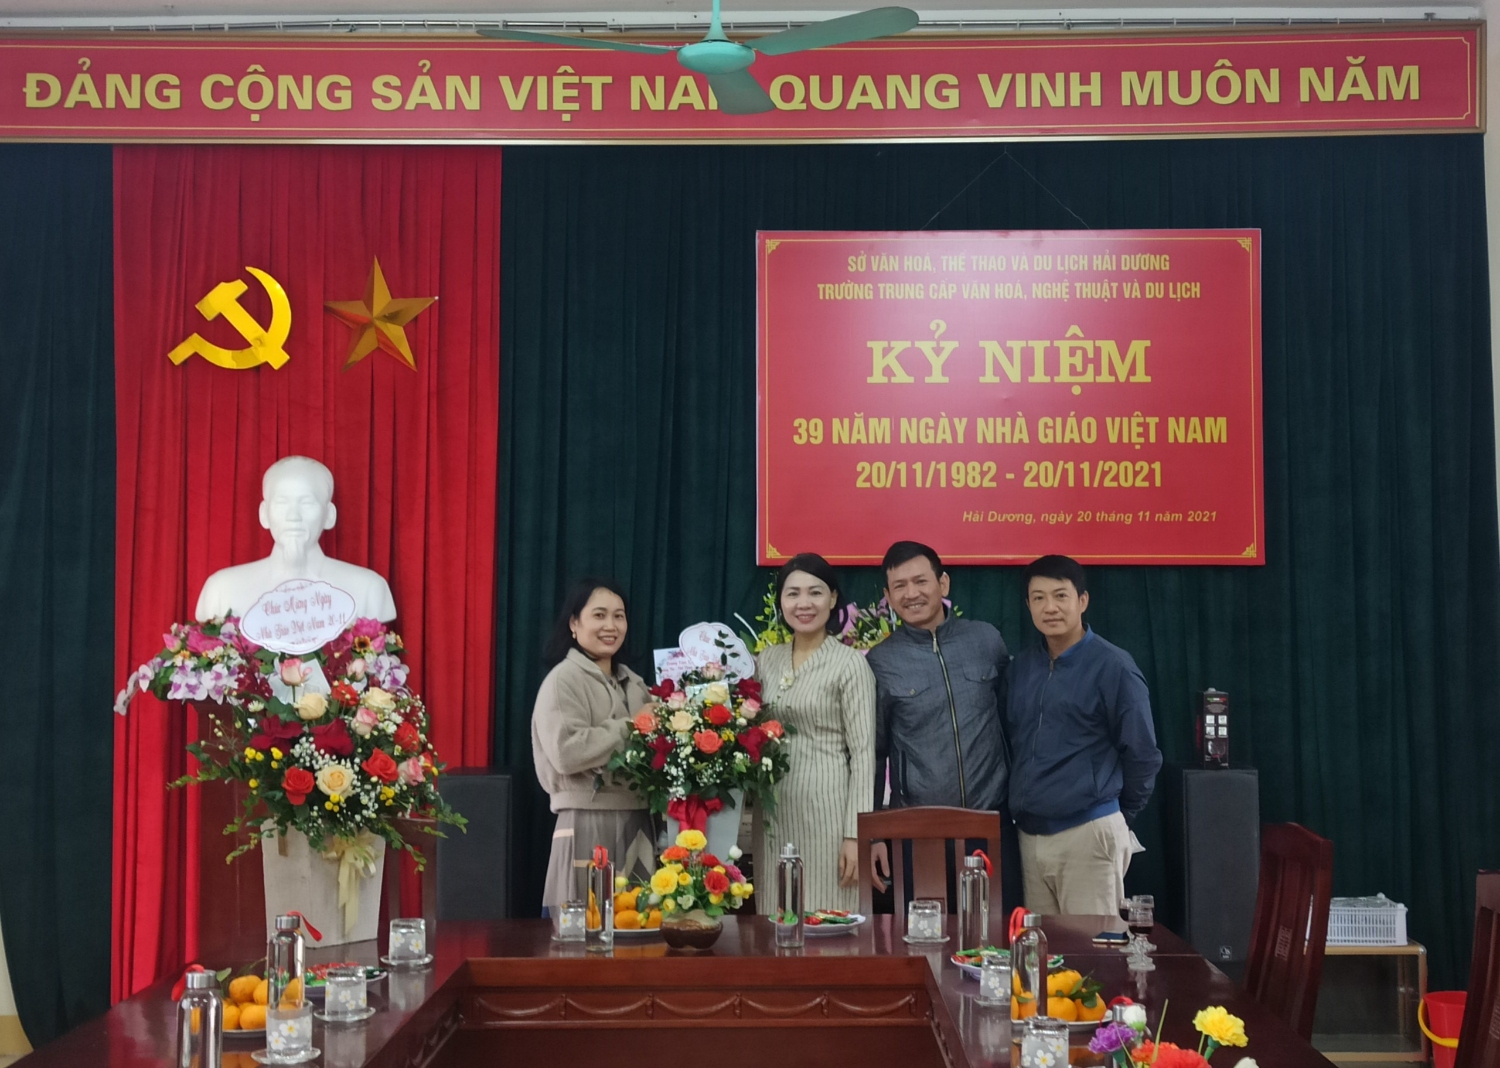 Cô Nguyễn Thị Nga - Phó hiệu trưởng nhà trường nhận hoa chúc mừng